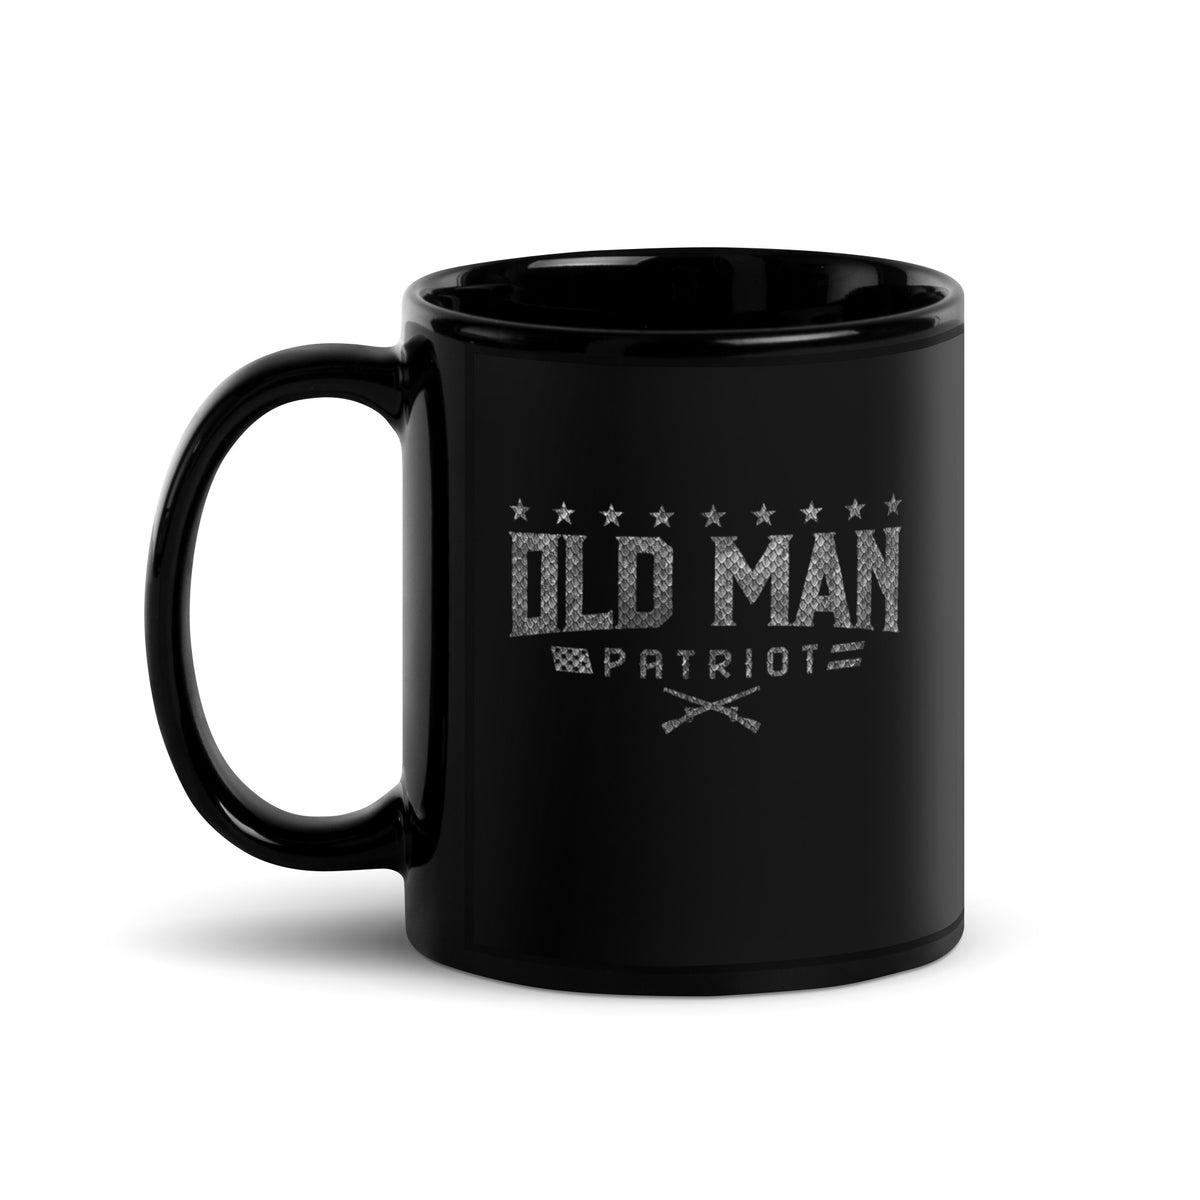 Old Man Carbon Mug